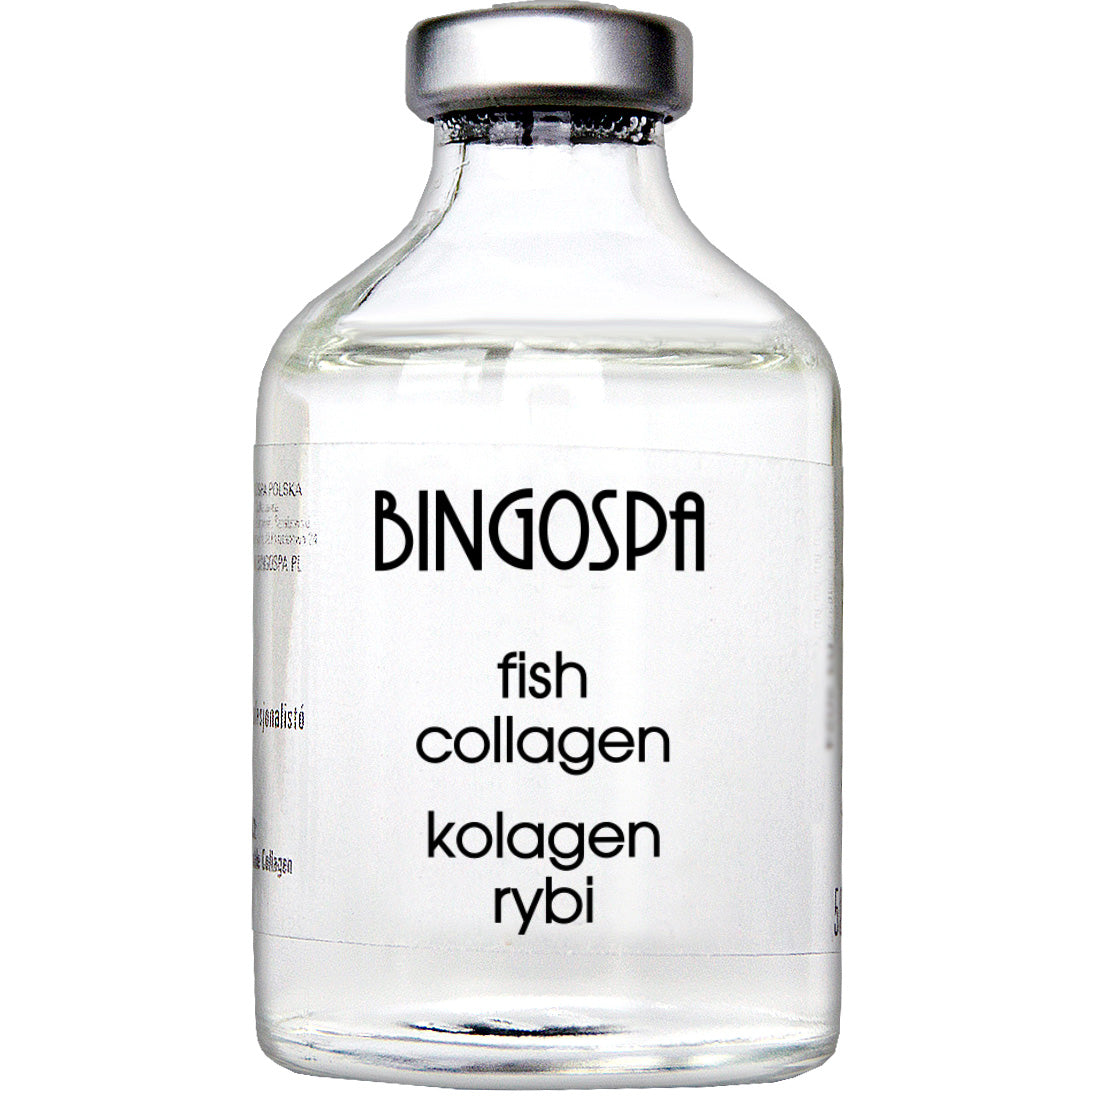 Kolagen rybi (surowiec kosmetyczny) BINGOSPA 50ml